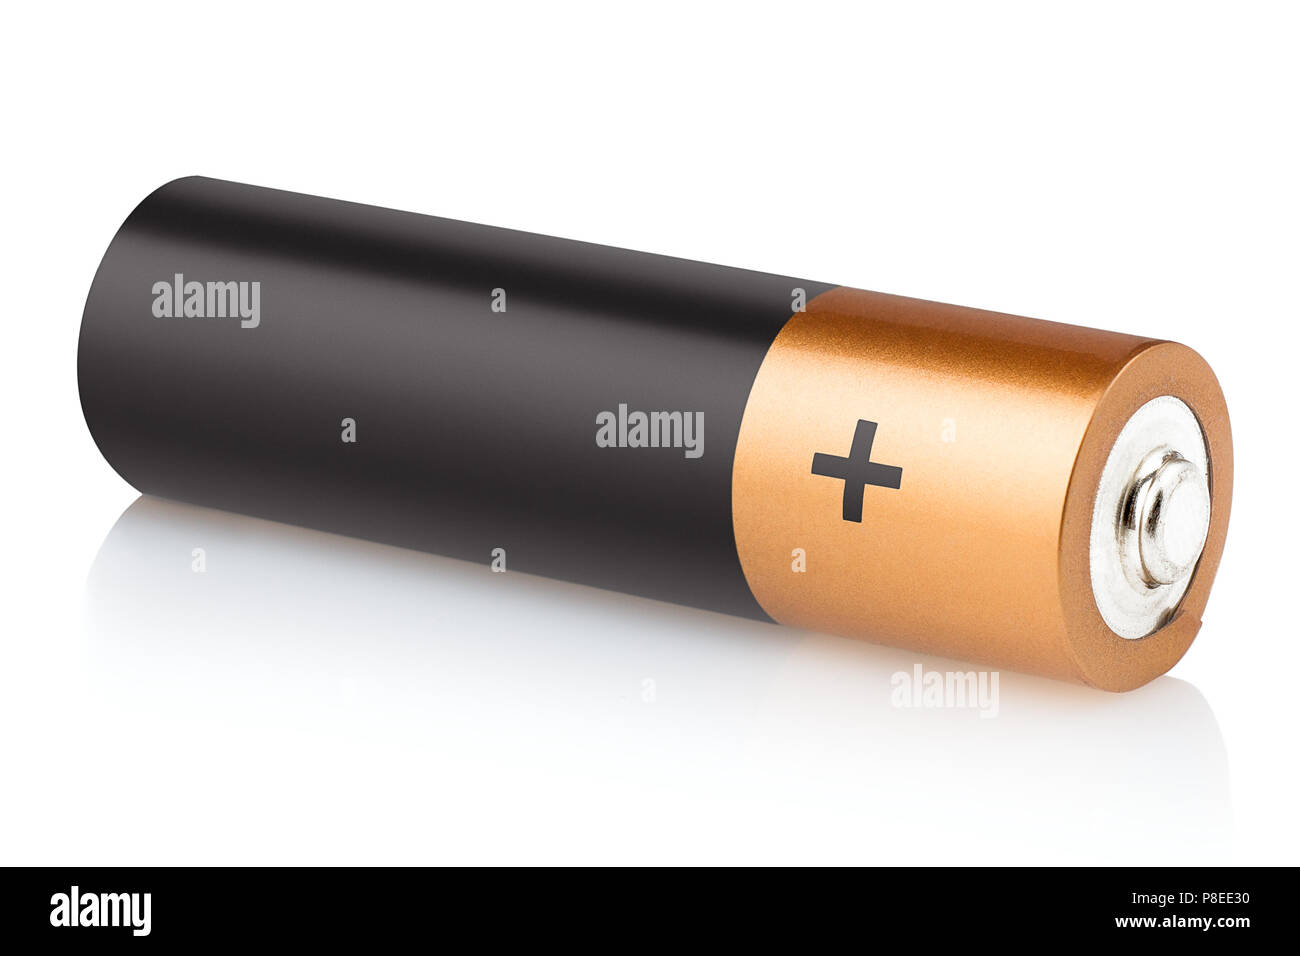 AA-Alkaline Batterie auf einem weißen Hintergrund, isoliert, hohe Qualität Stockfoto